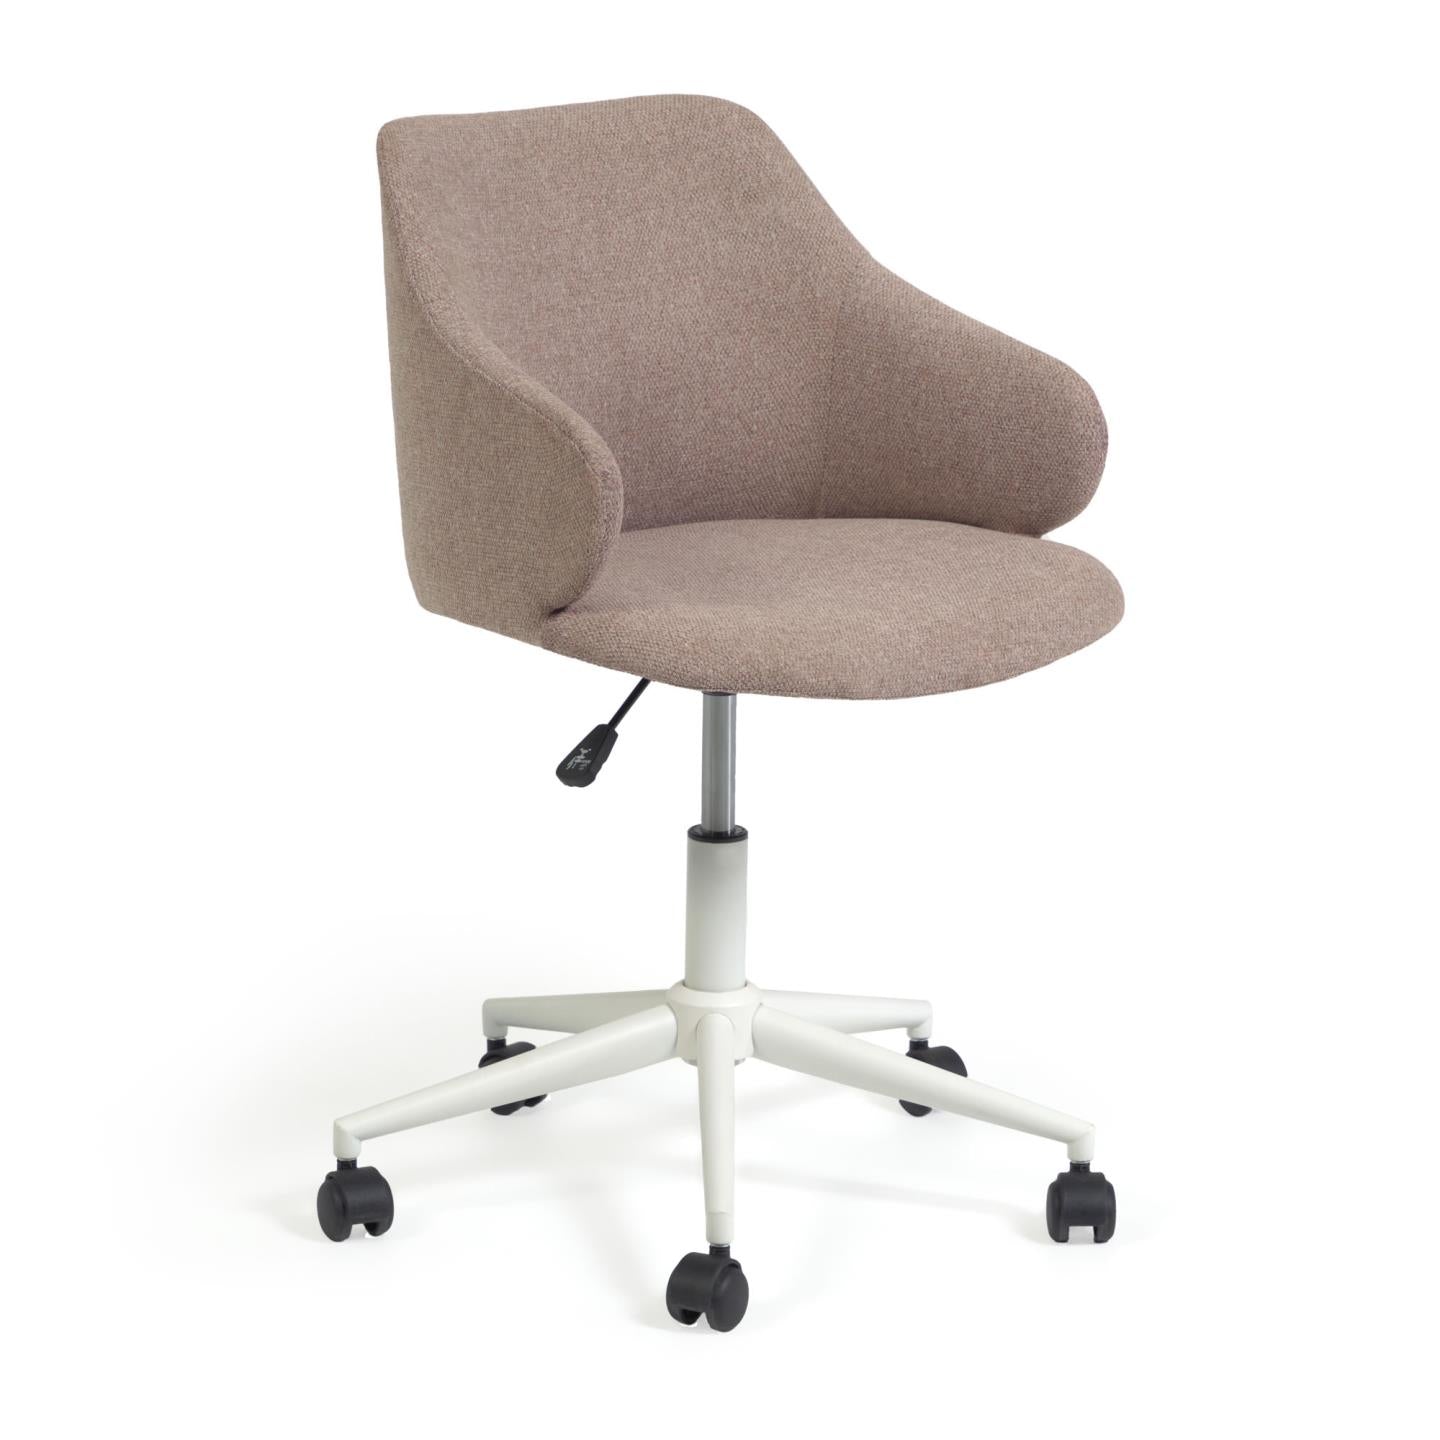 Einara pink office chair